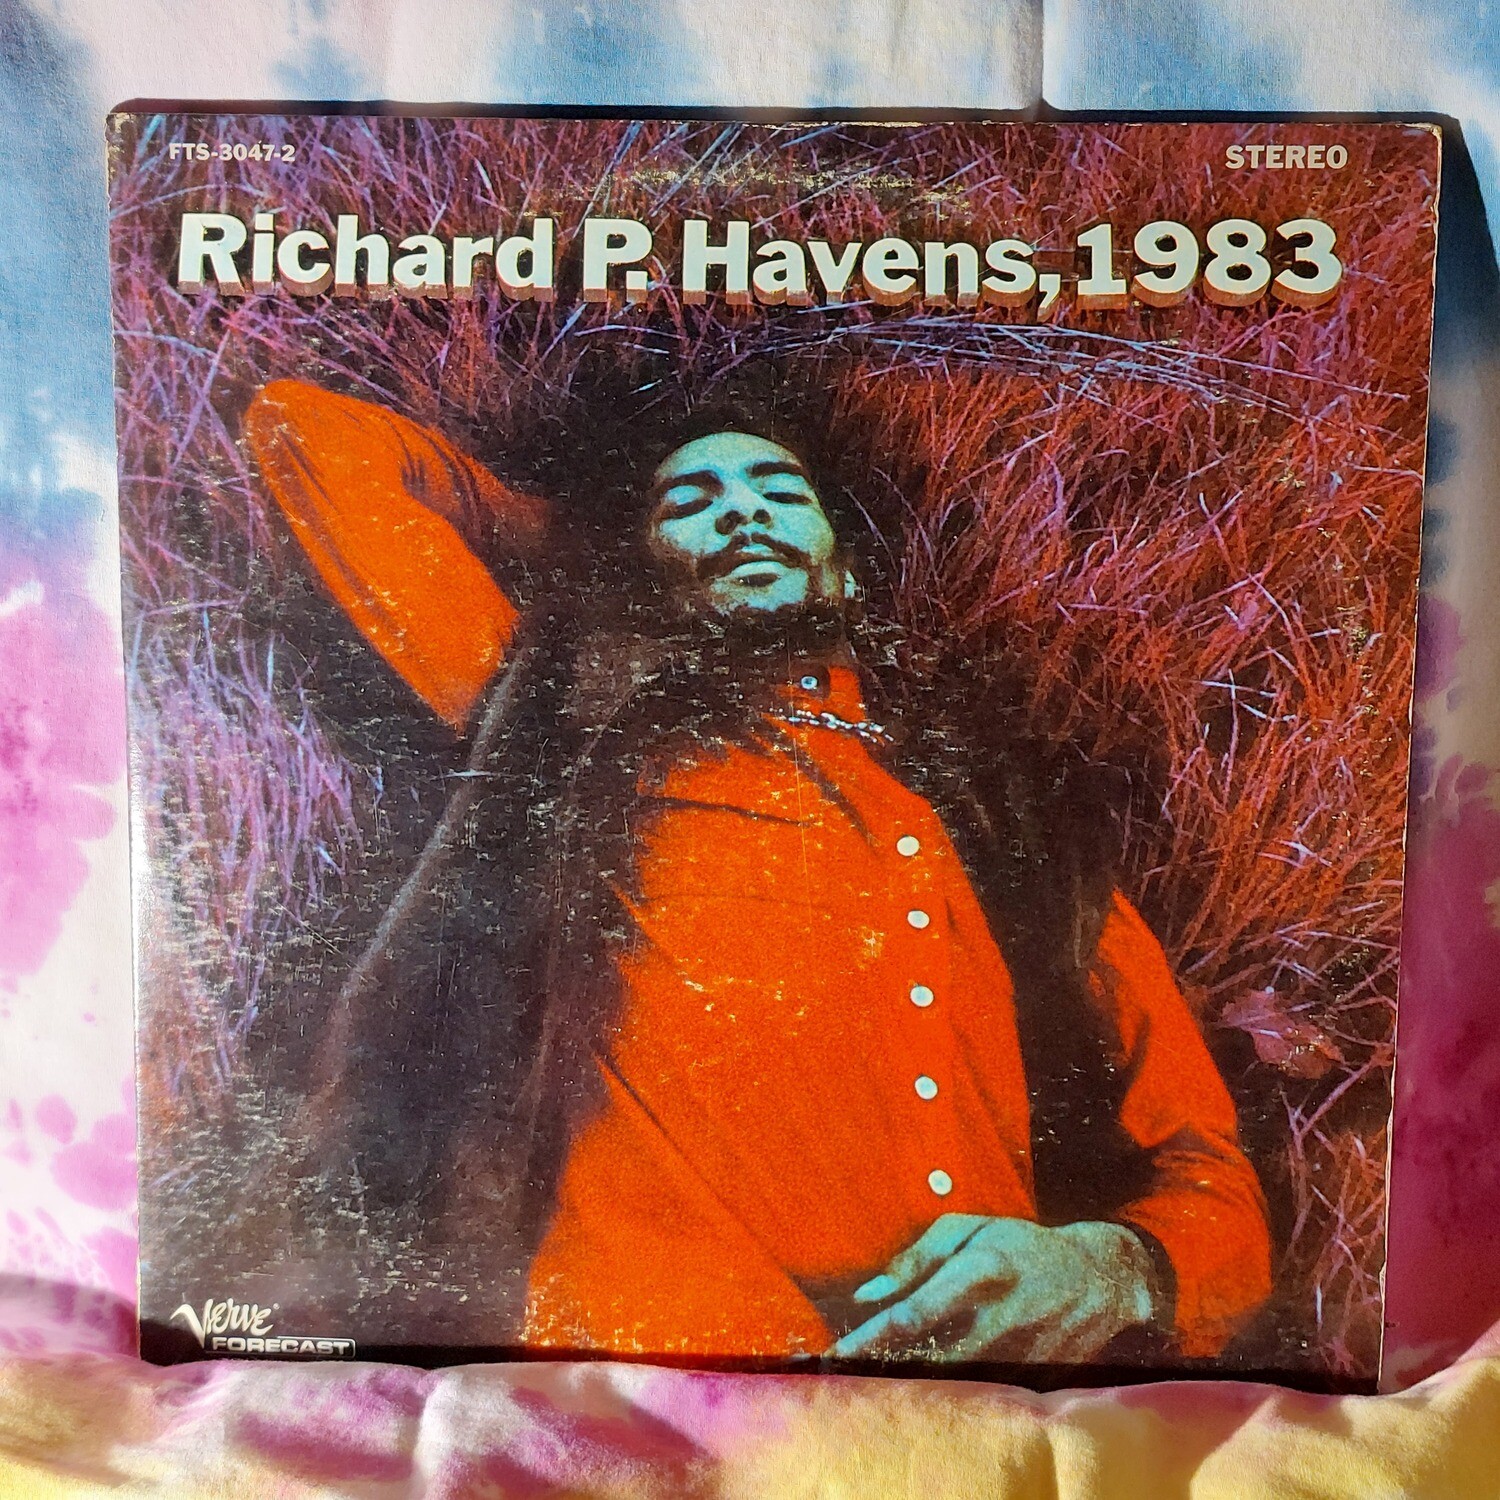 Richie Havens - Richie P. Havens, 1983 (1969) 2LP